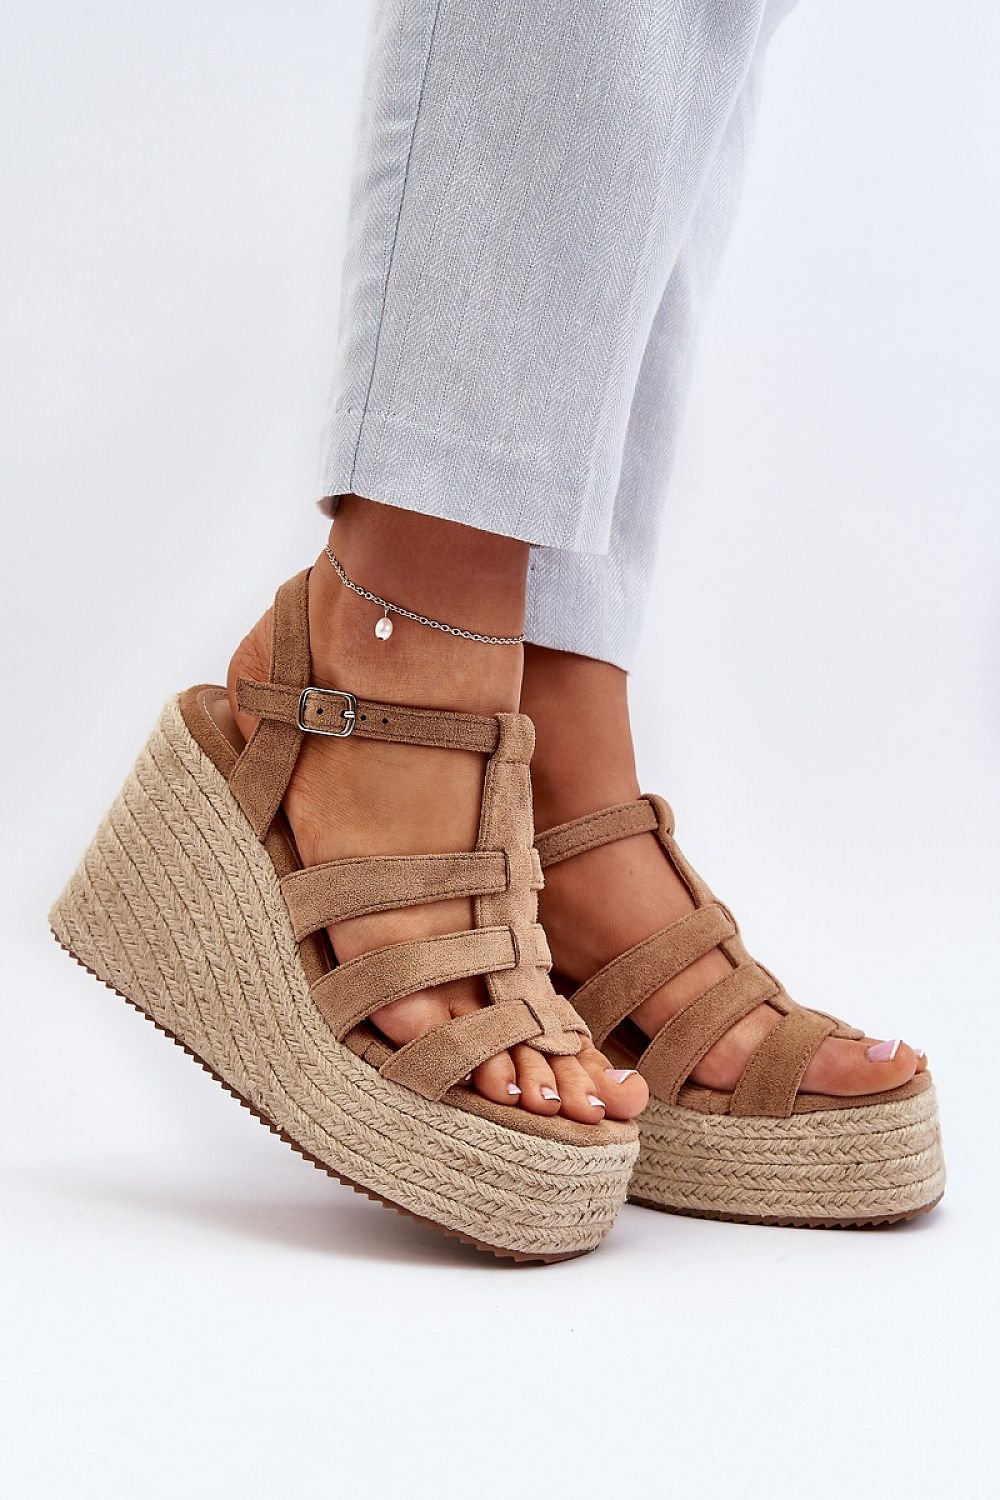 Step in Style Buskin: Elegant Platform Sandals for Ultimate Comfort